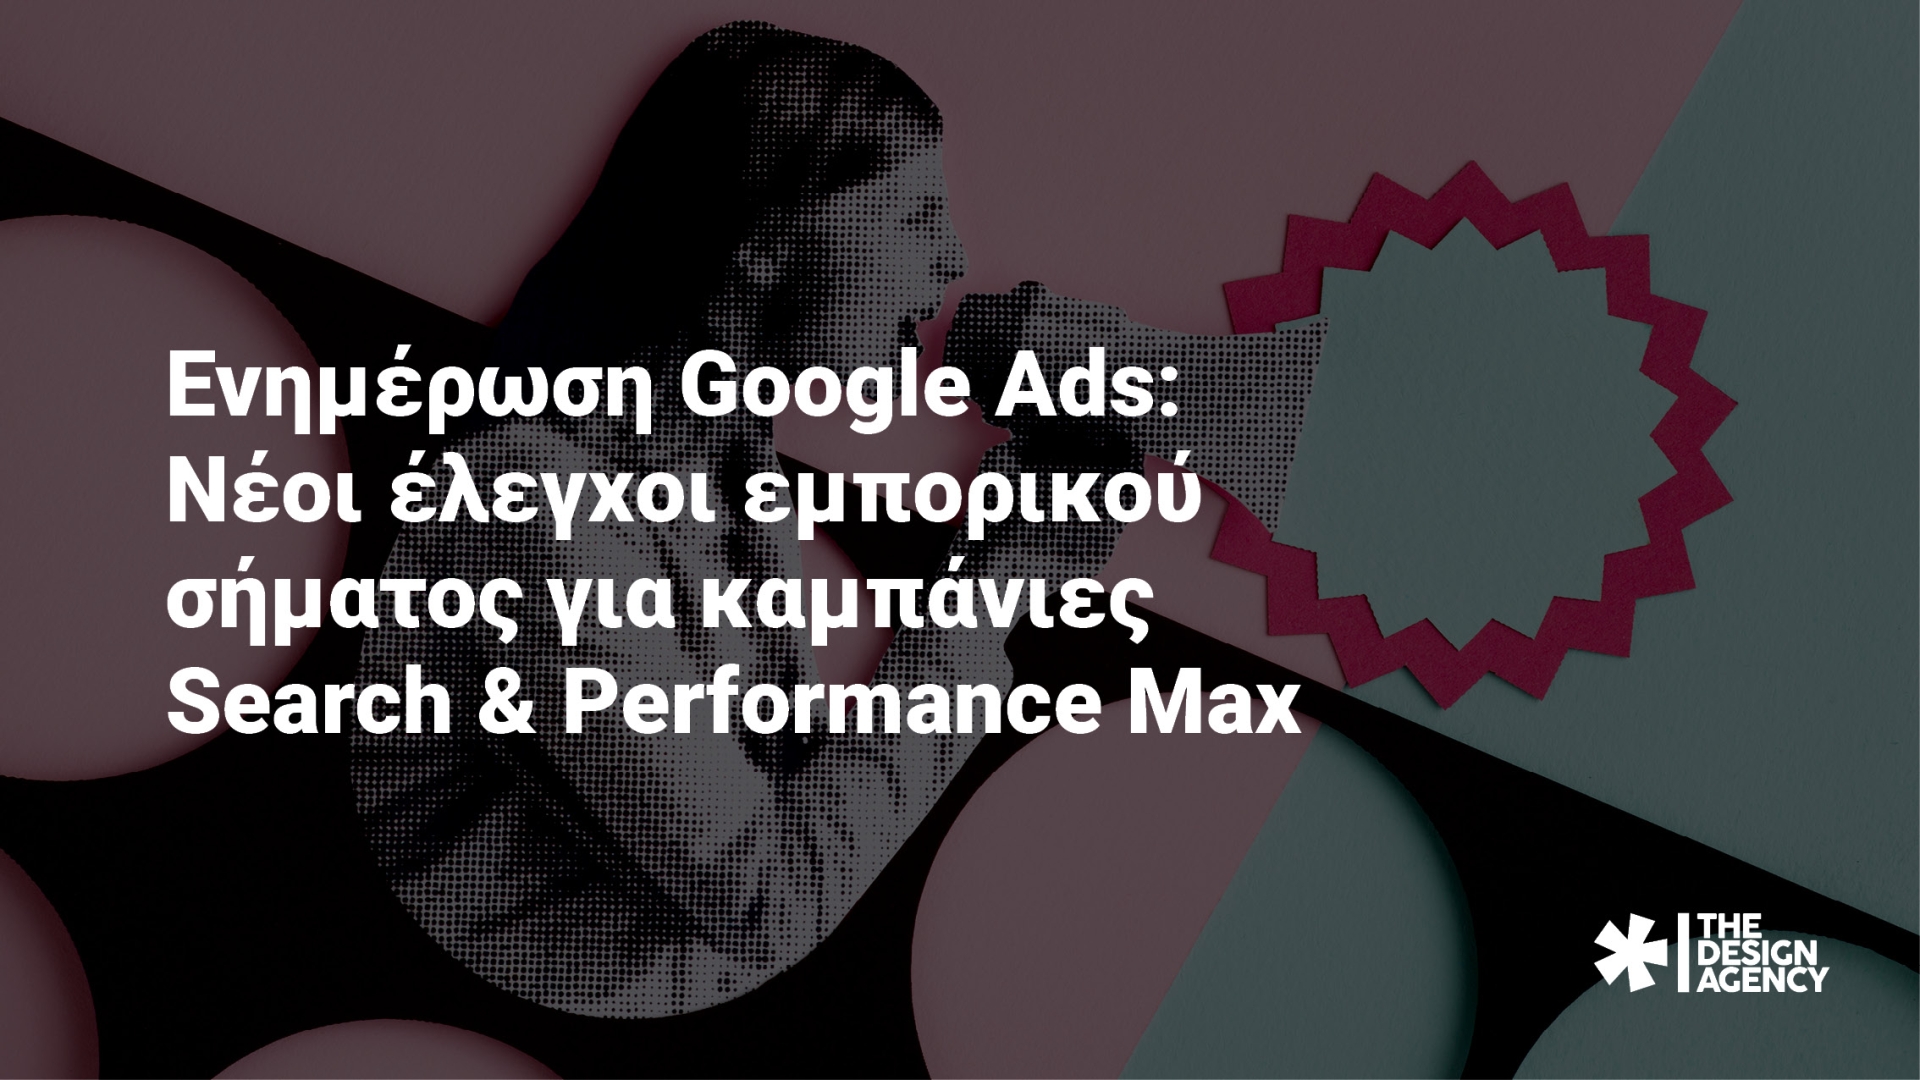 Ενημέρωση Google Ads: Νέοι έλεγχοι εμπορικού σήματος για καμπάνιες Search & Performance Max